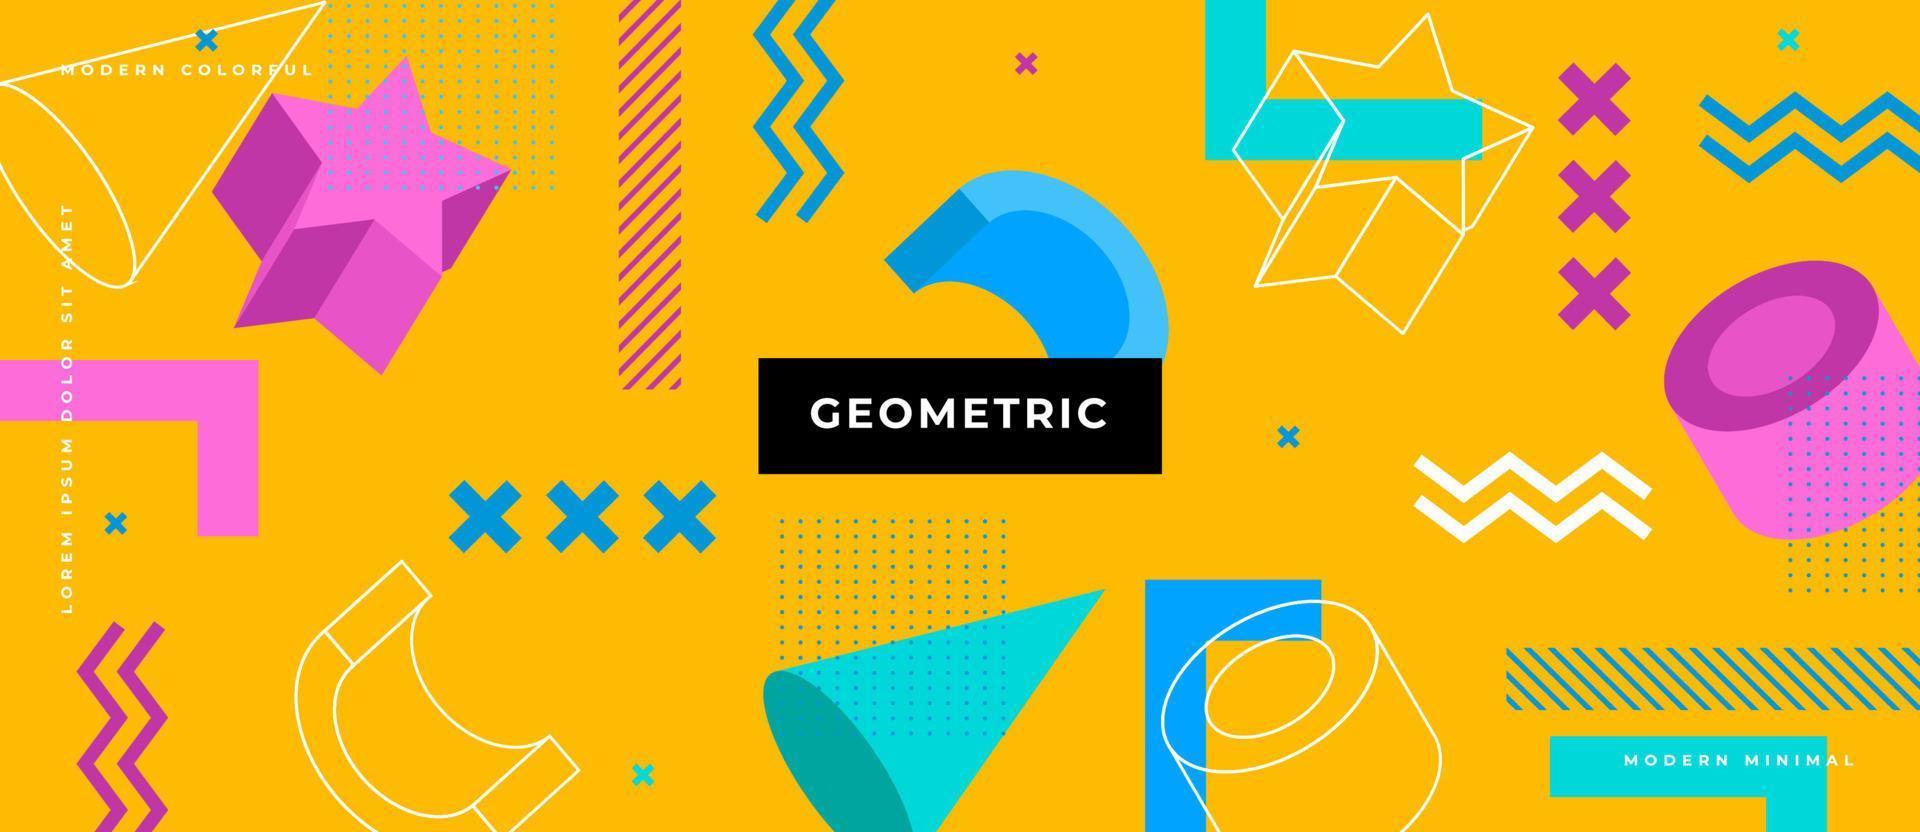 forme de polygone 3d coloré, formes géométriques de style memphis, points, arrière-plan de lignes. vecteur